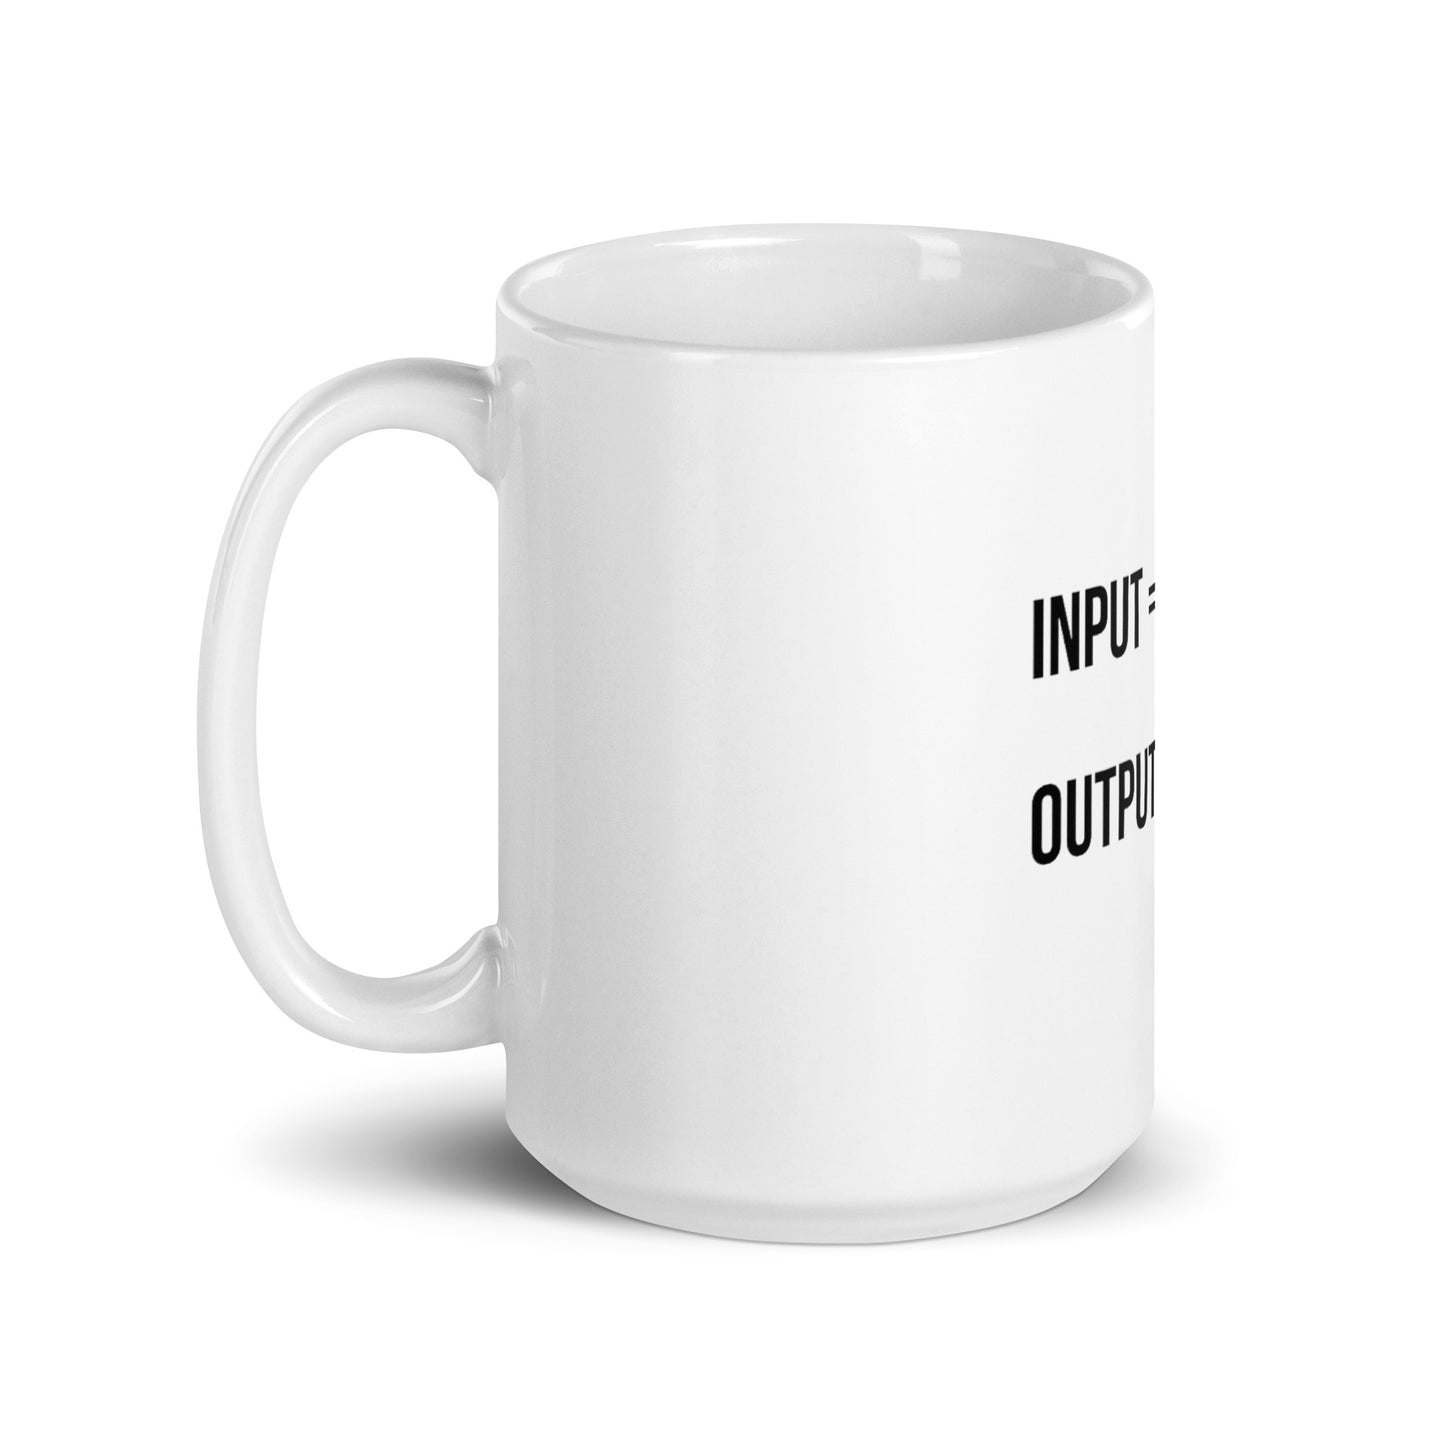 Input Output glossy mug